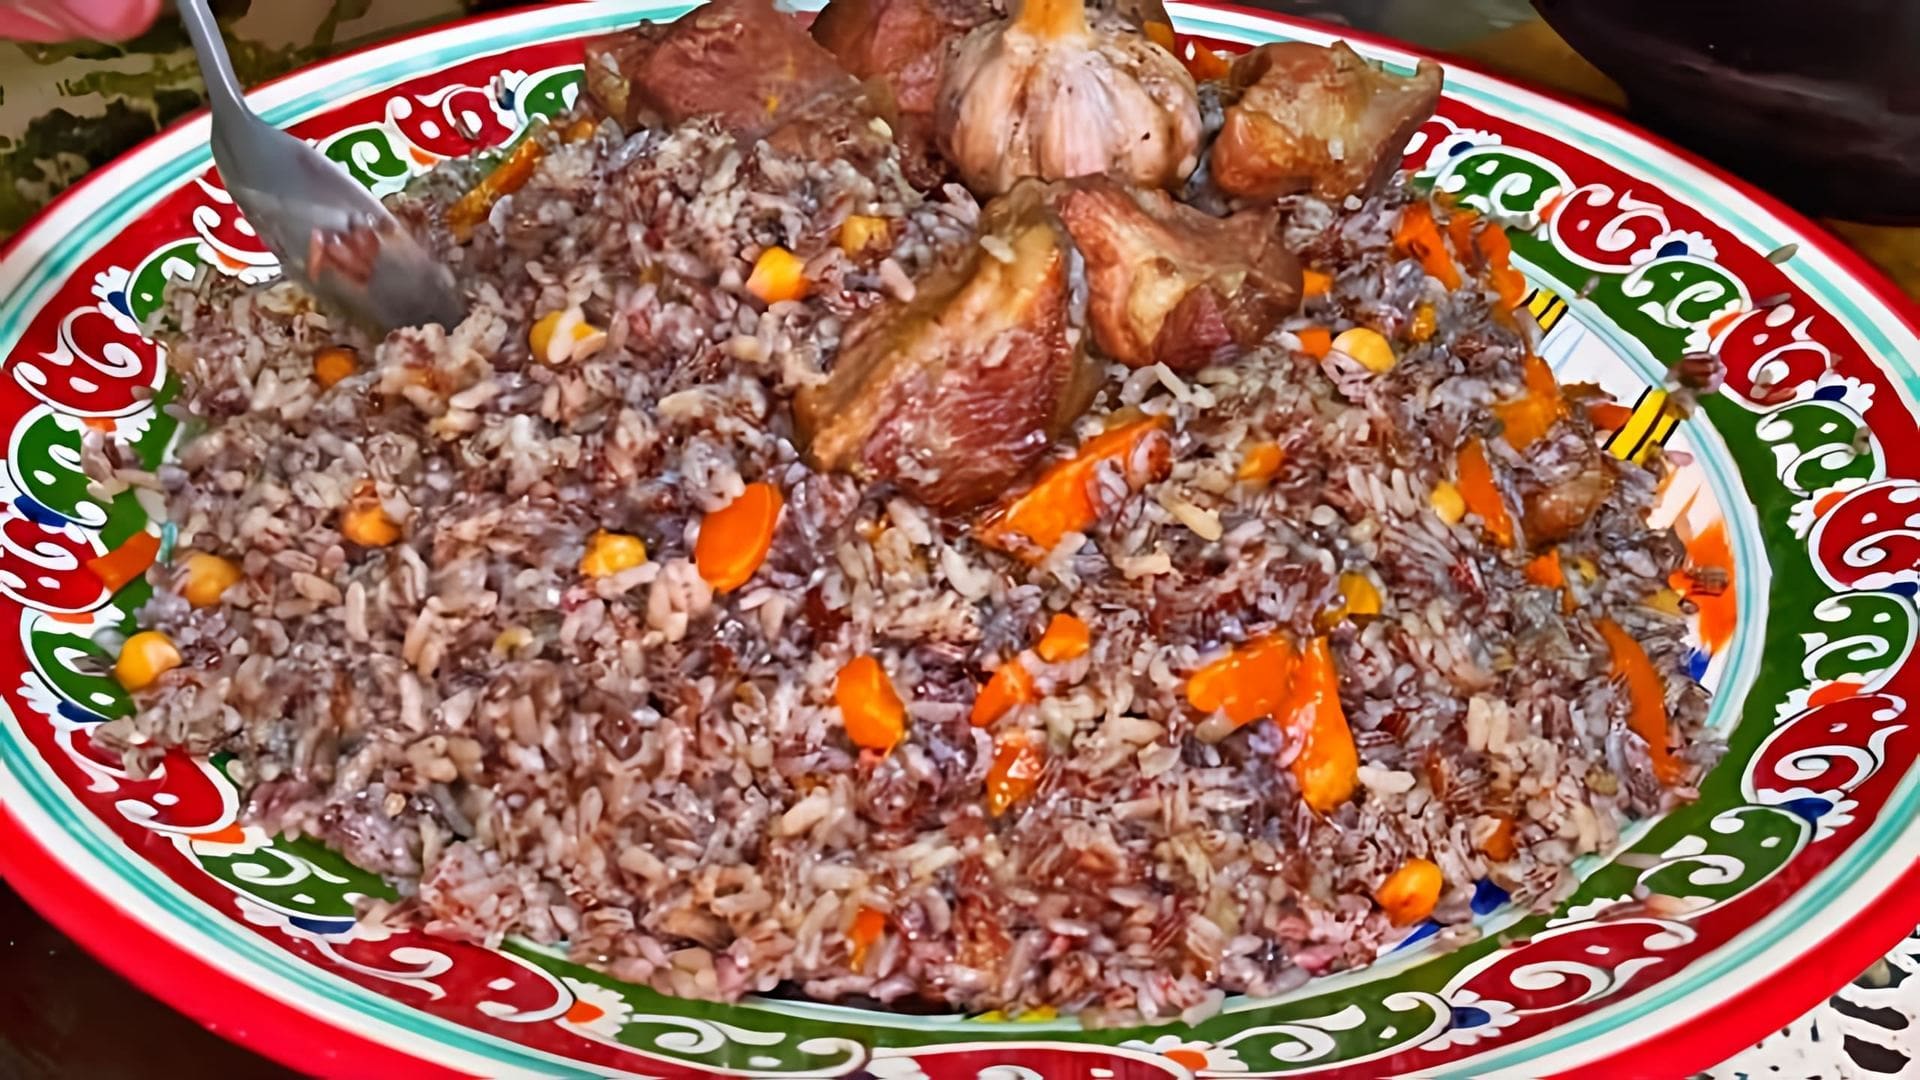 Плов из бурого риса - это вкусное и полезное блюдо, которое можно приготовить в домашних условиях